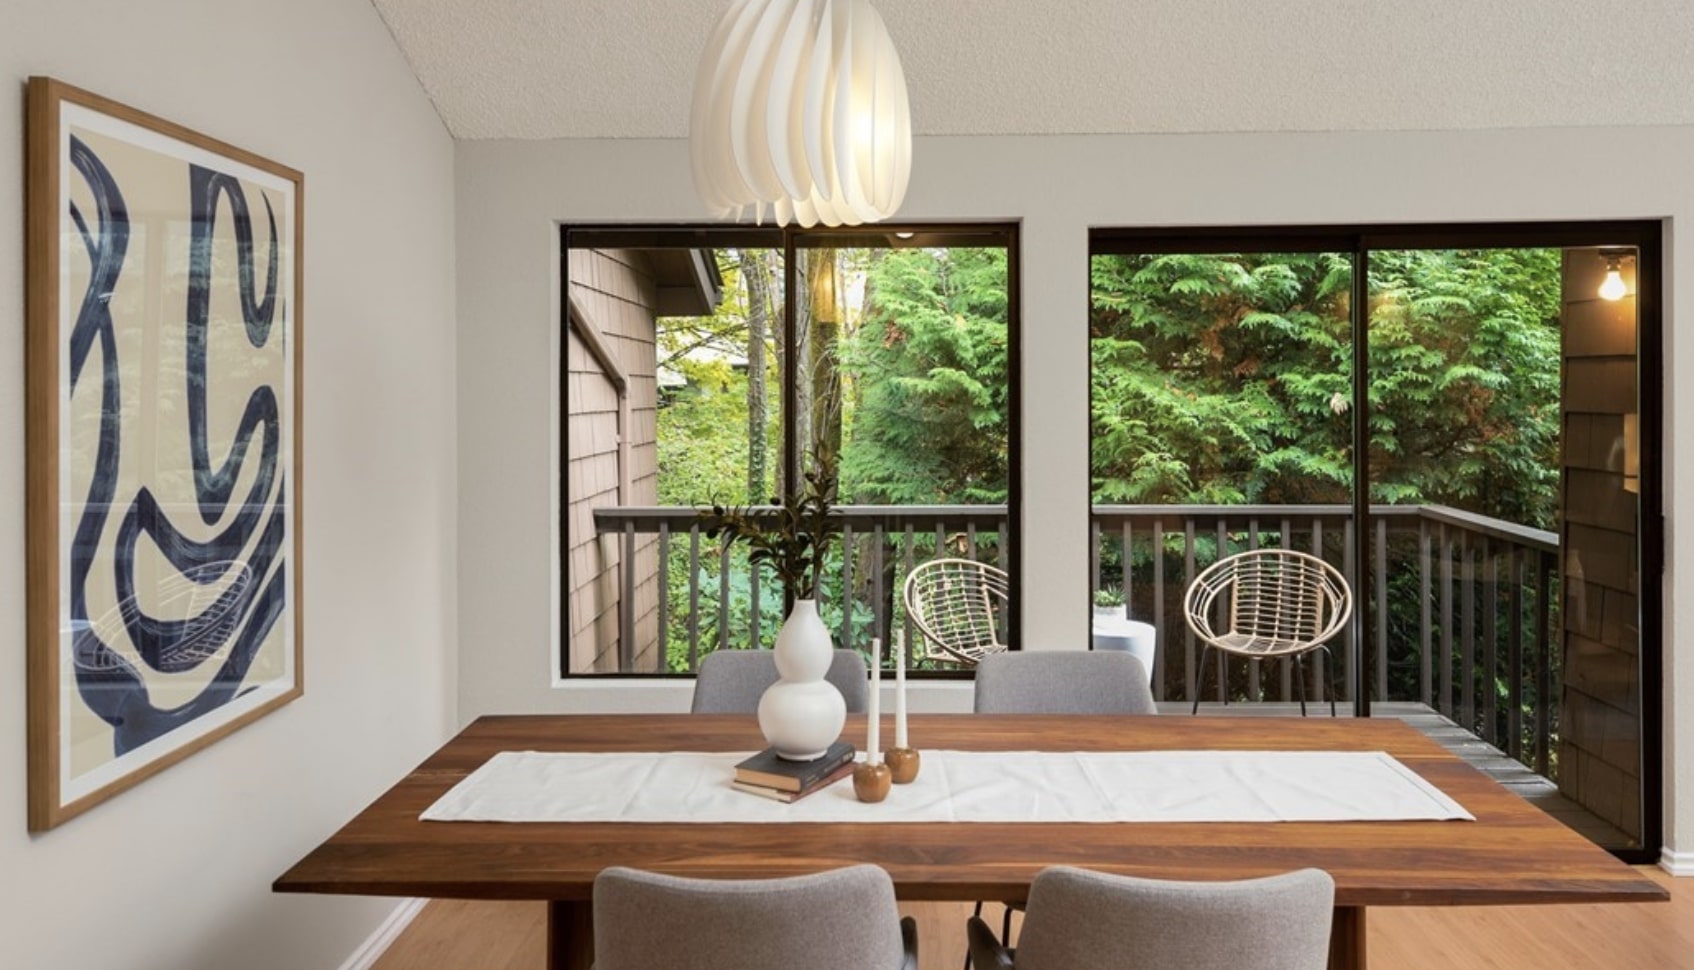 Simple yet elegant modern dining space